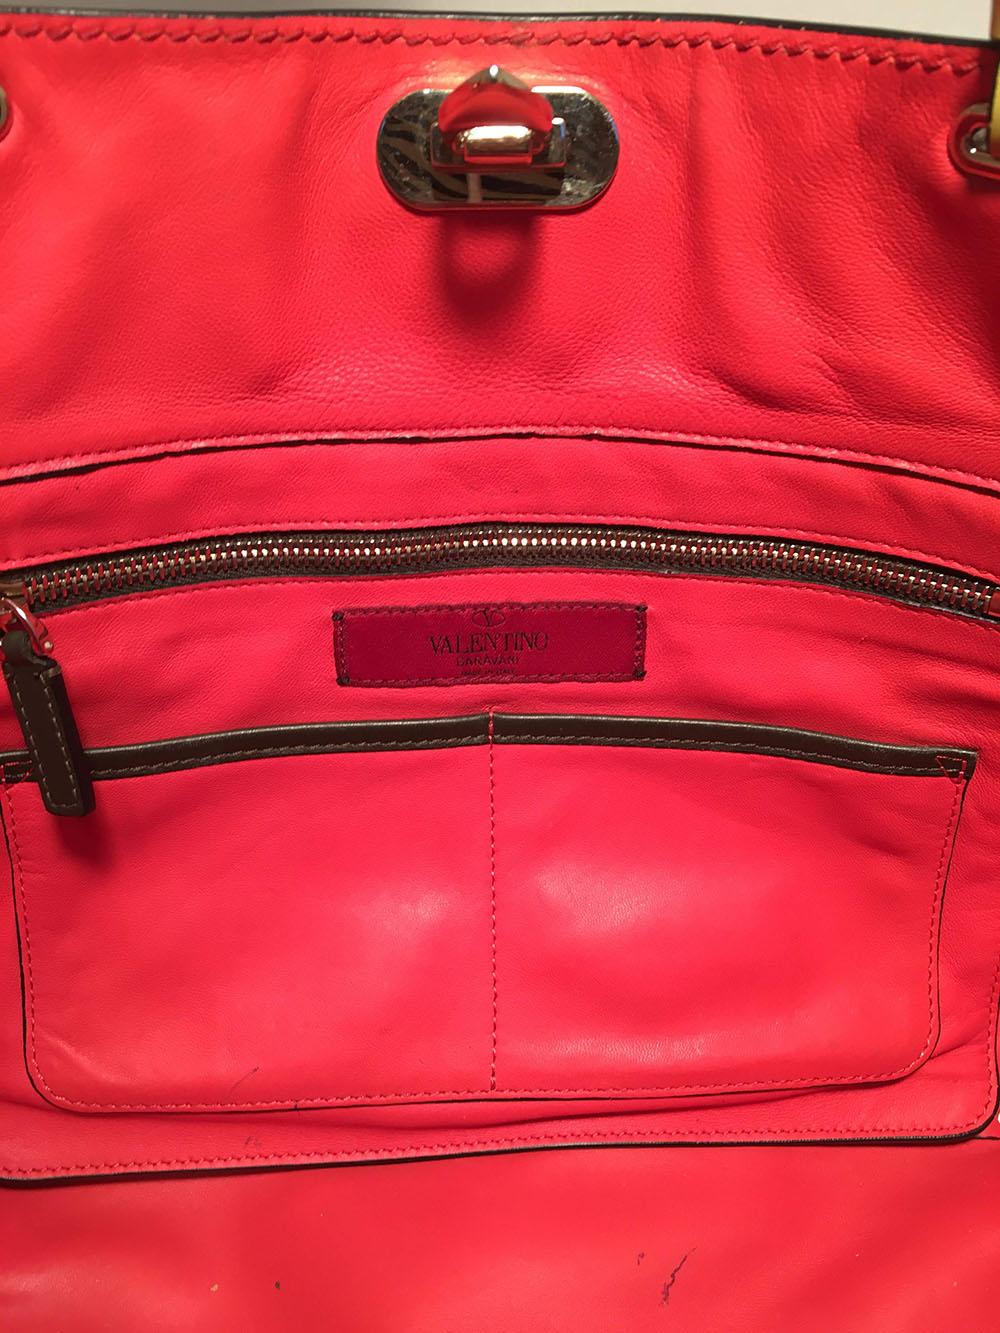 Valentino Garavani Studded Multicolor Leather Rockstud Tote Bag 1